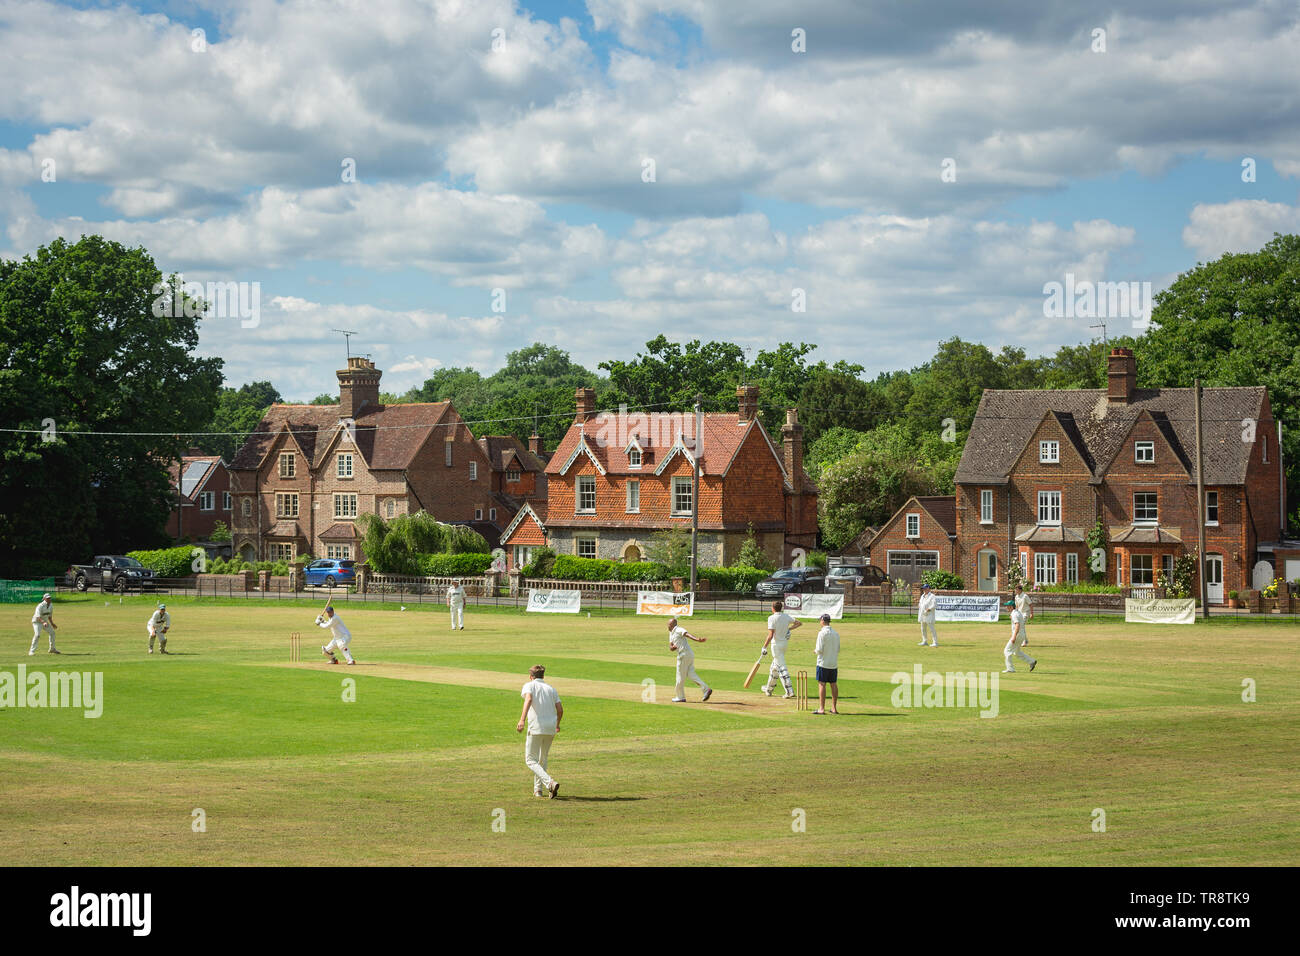 Ein typisches englisches Dorf cricket Szene an chiddingfold Cricket Club in Sussex, England - Juni 2018. Stockfoto